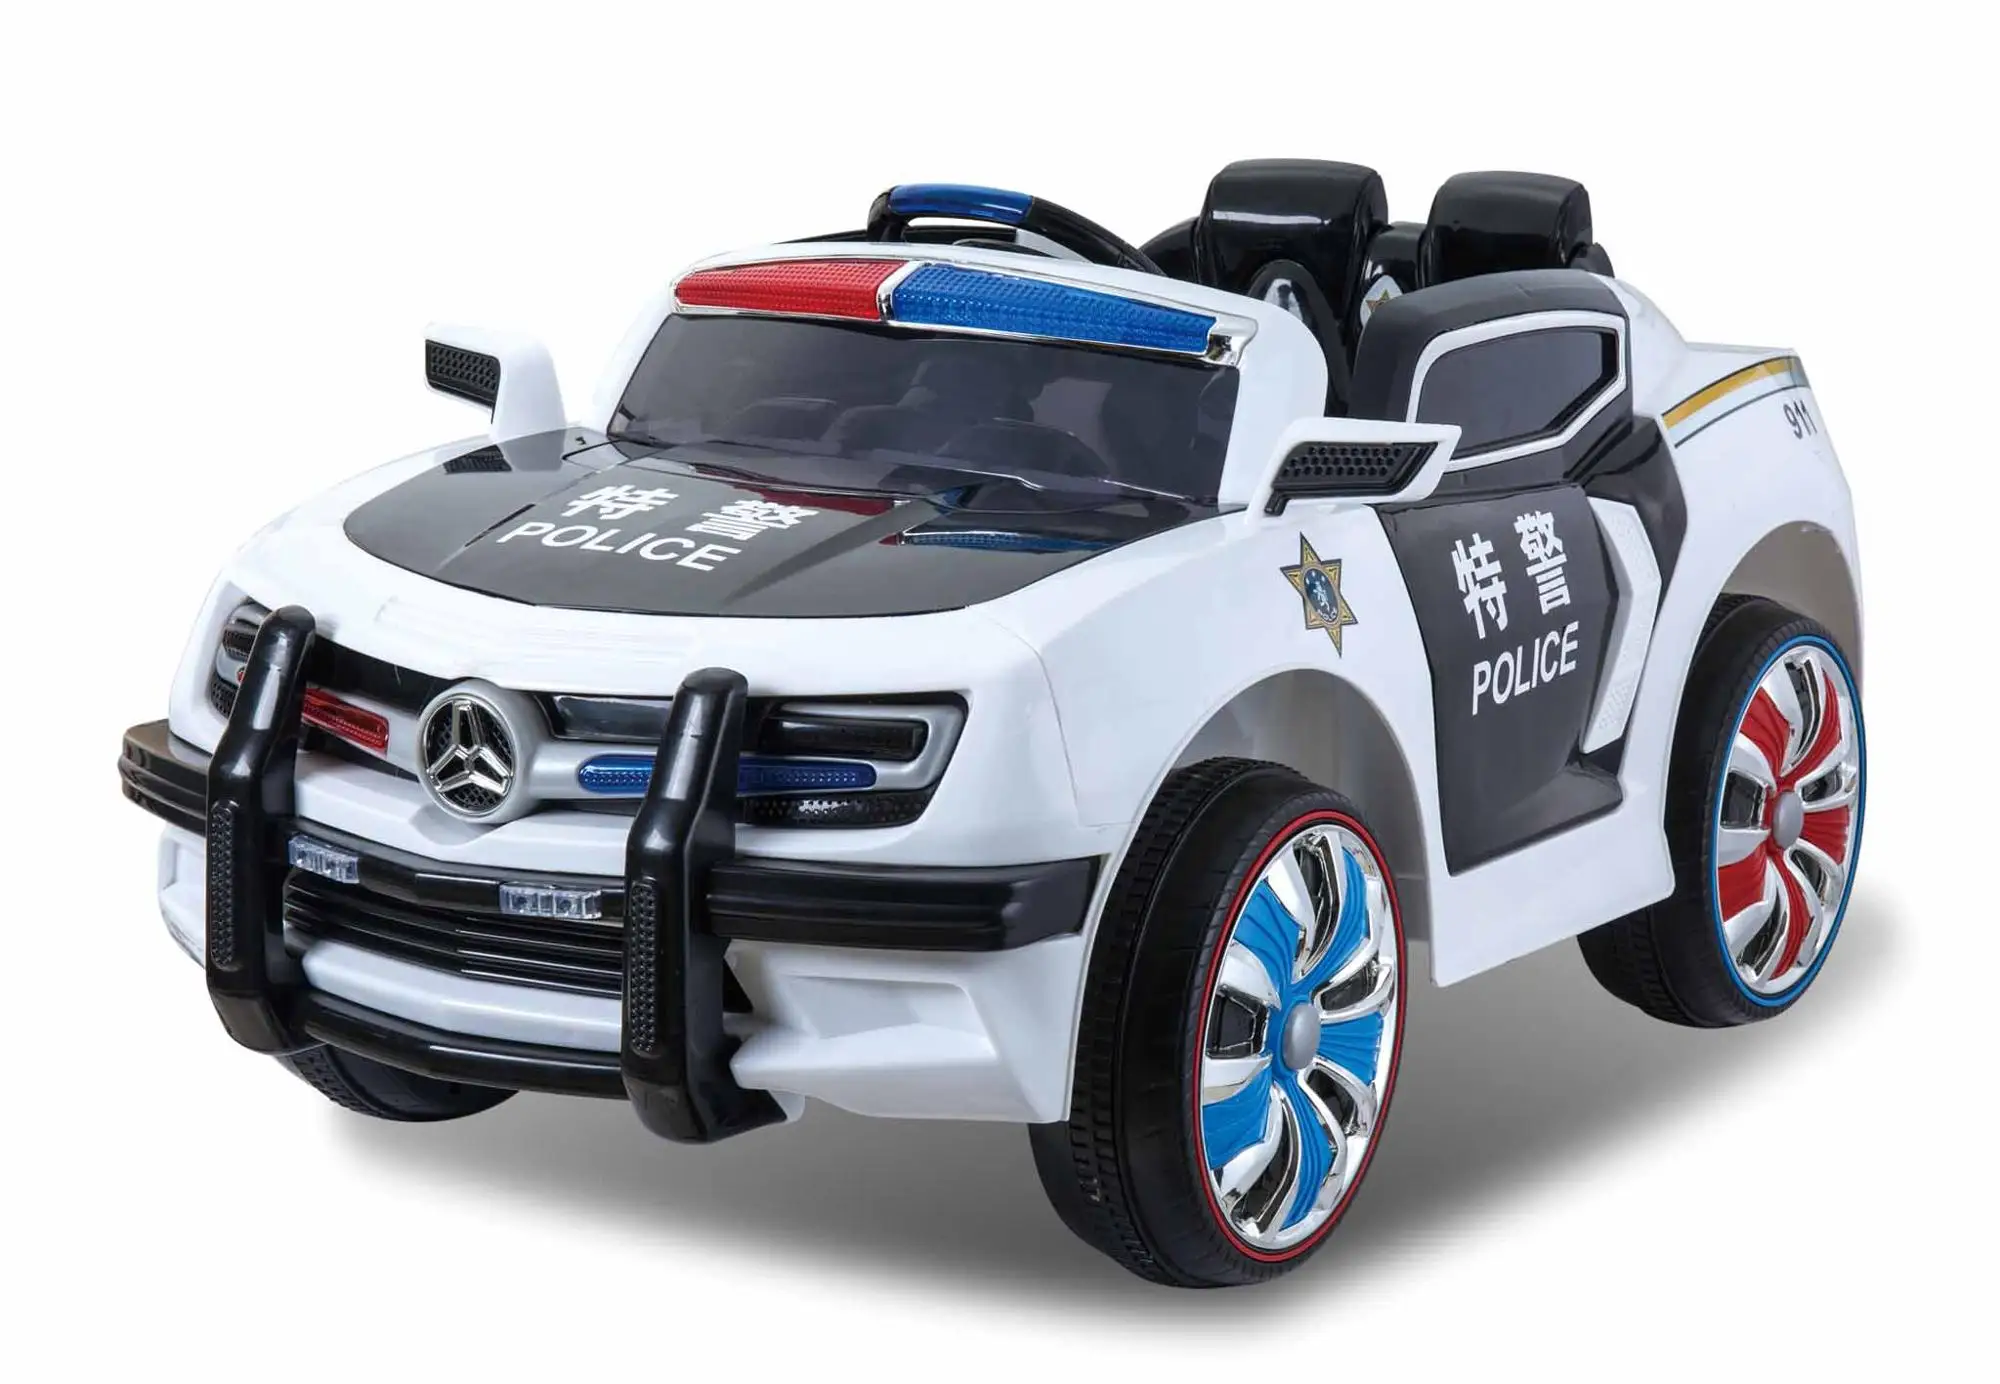 police car toy big